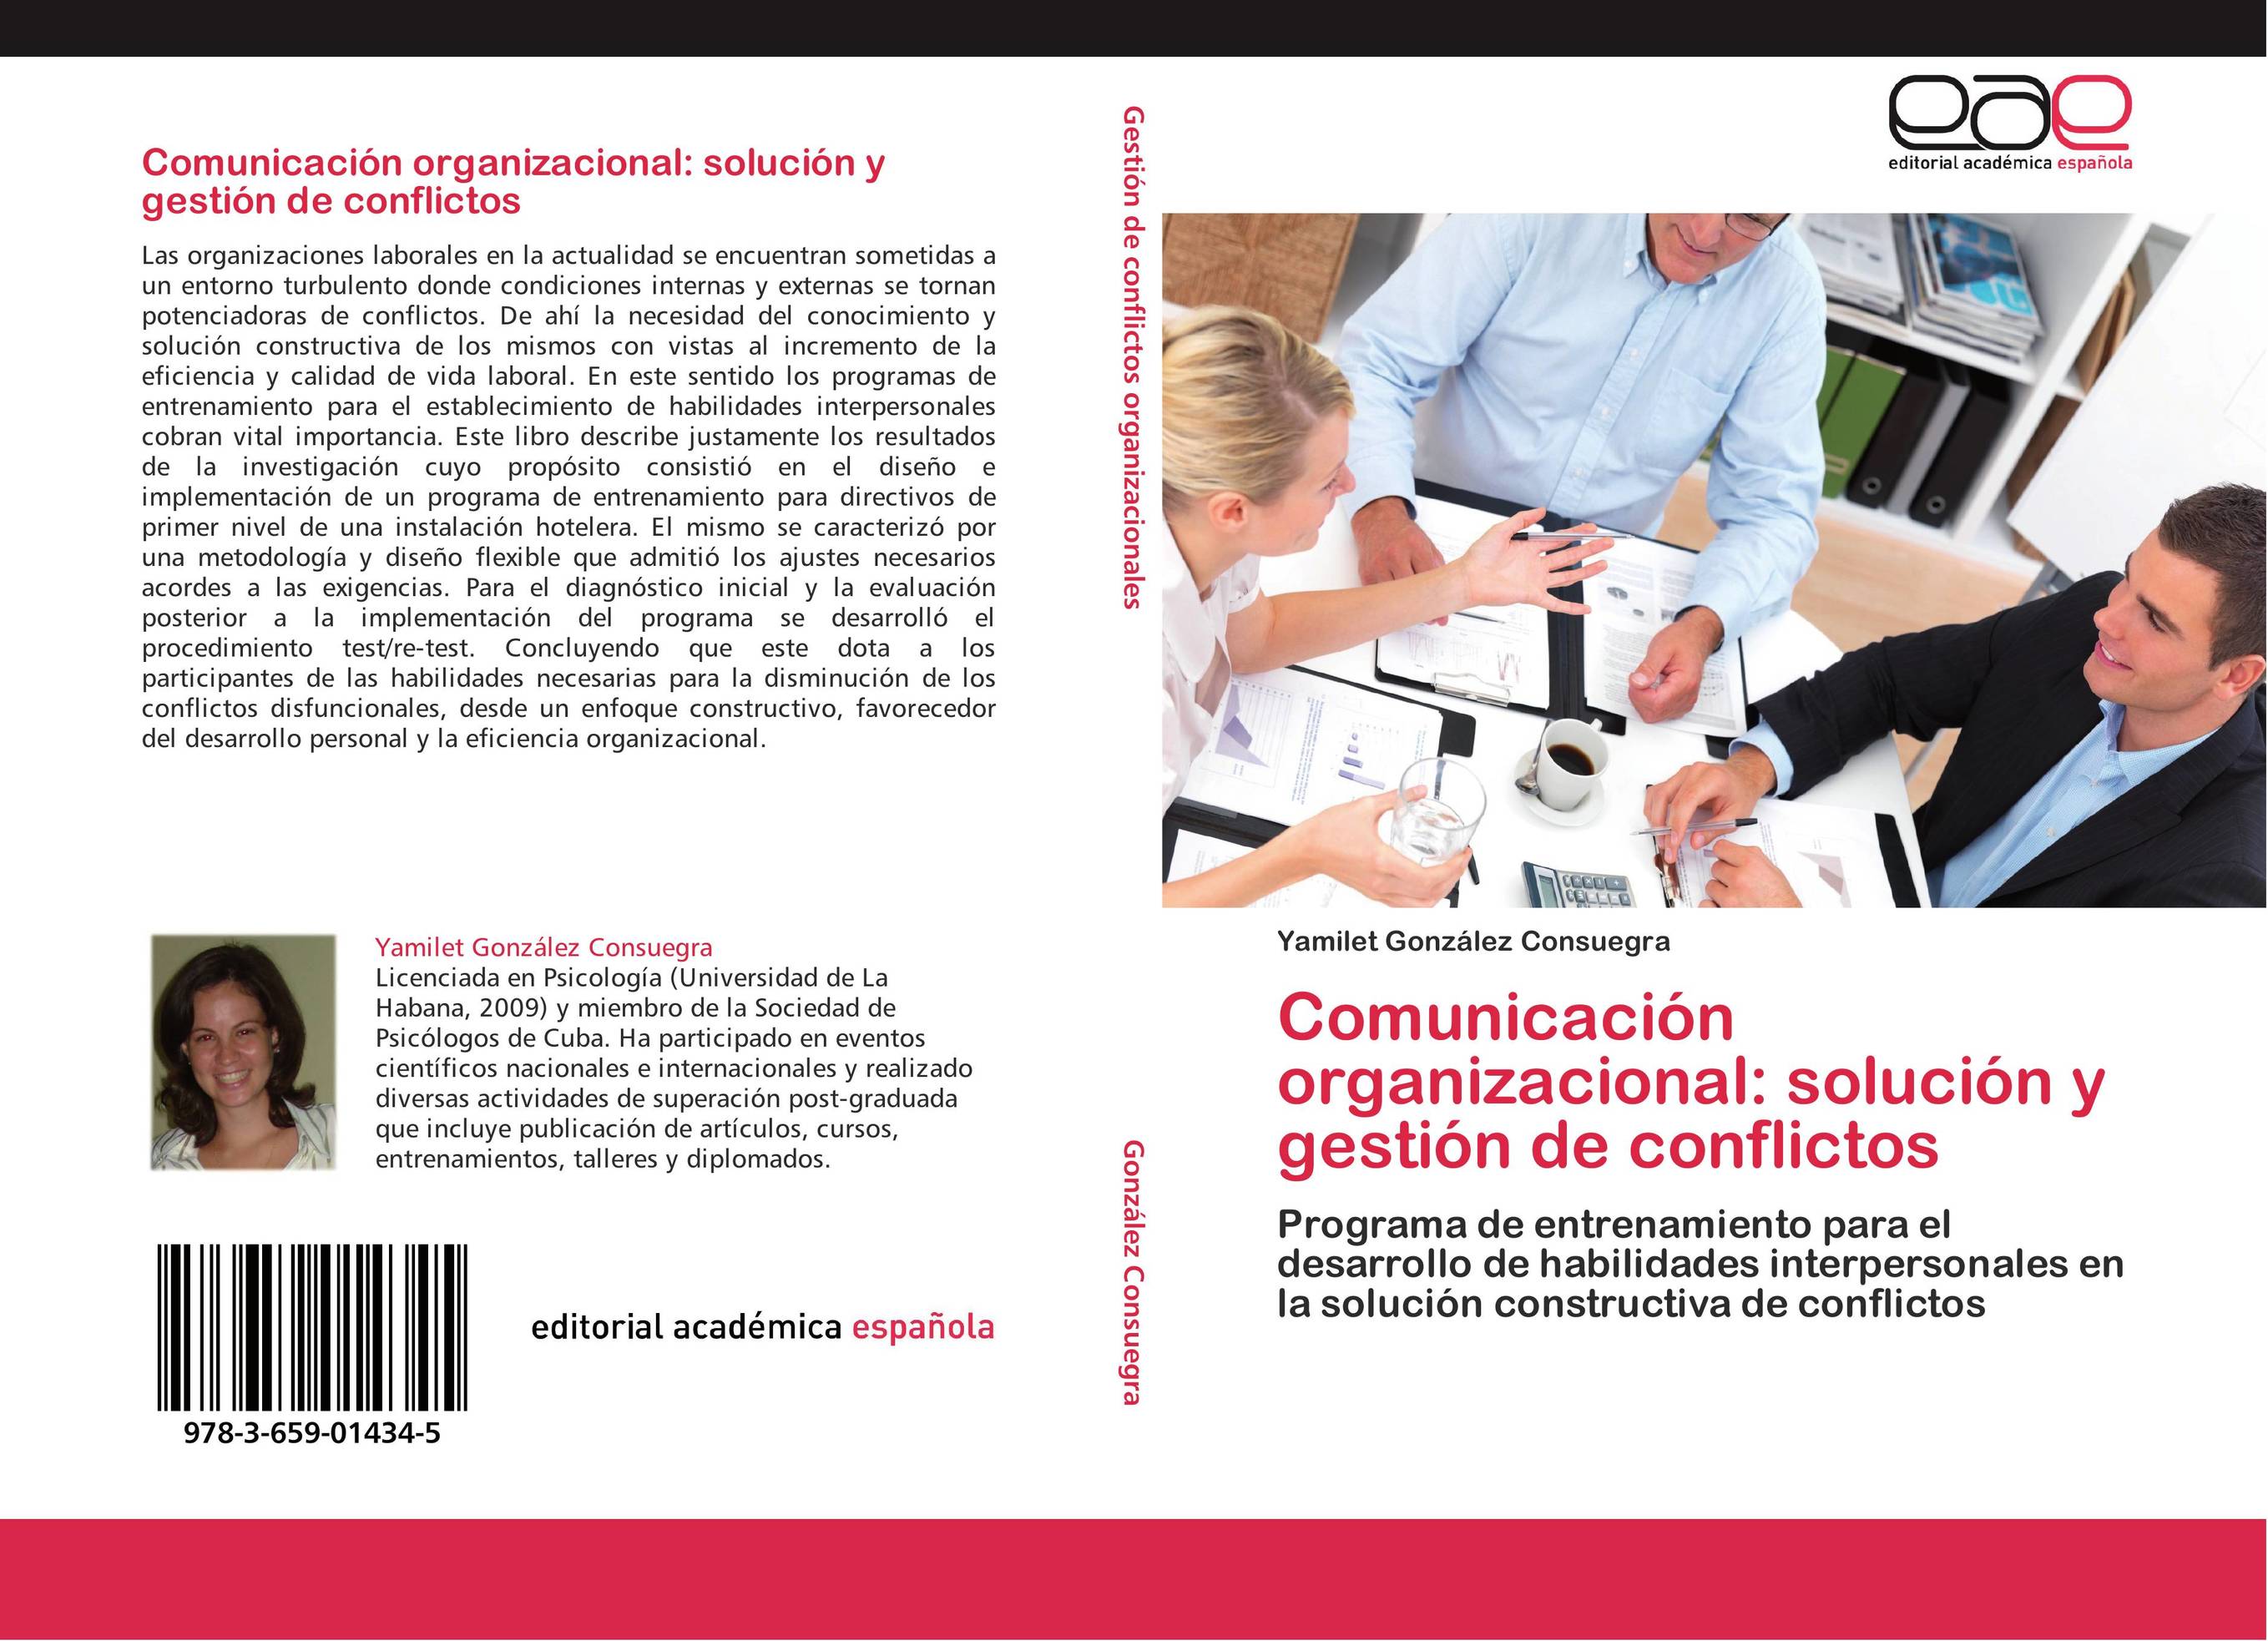 Comunicación organizacional: solución y gestión de conflictos